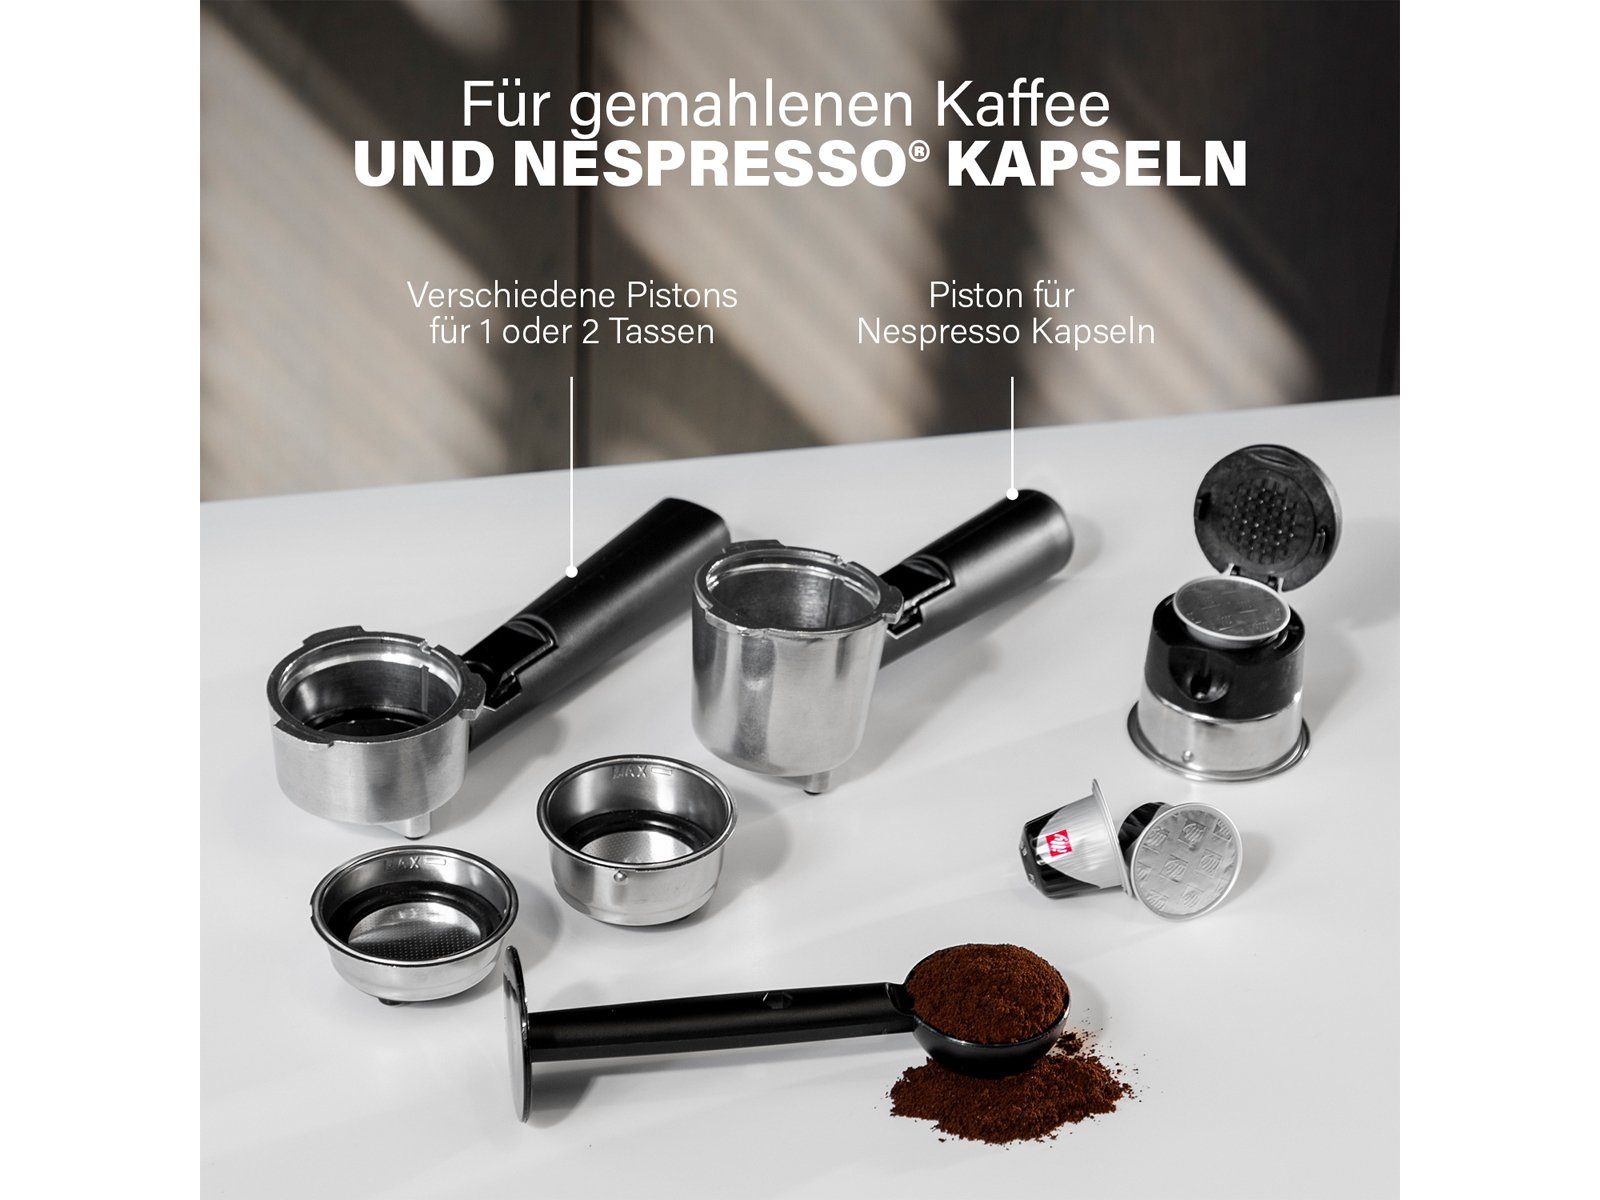 Siebdruck & PRINCESS mit Siebträgermaschine, Espresso-Maschine italienische Kaffee Milchaufschäumer